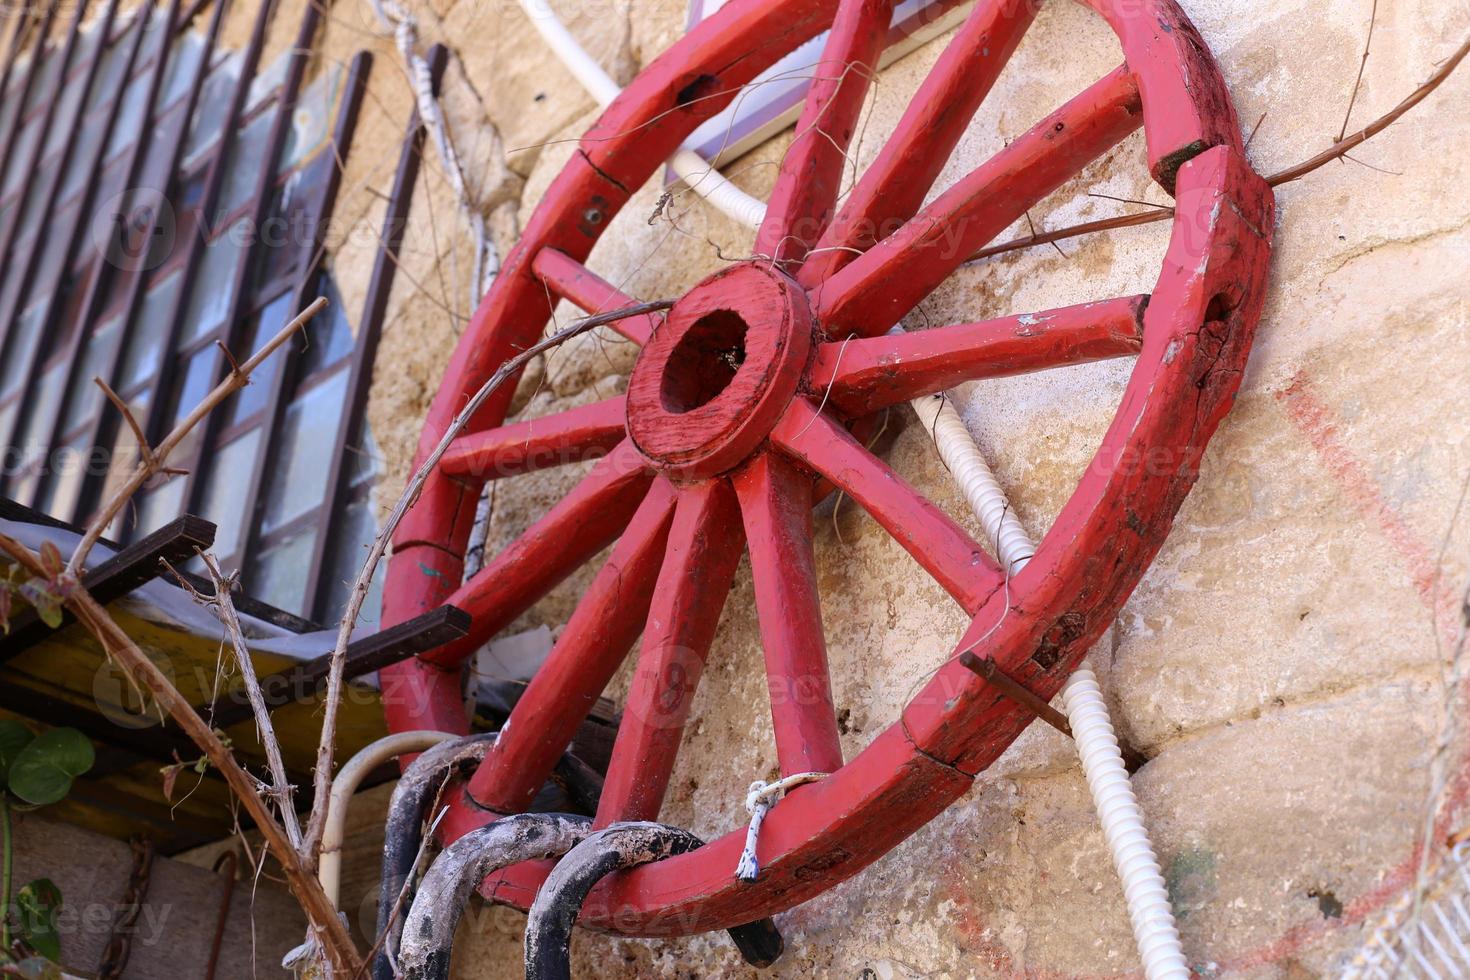 de hjul är allmänt Begagnade i olika mekanismer och verktyg. foto